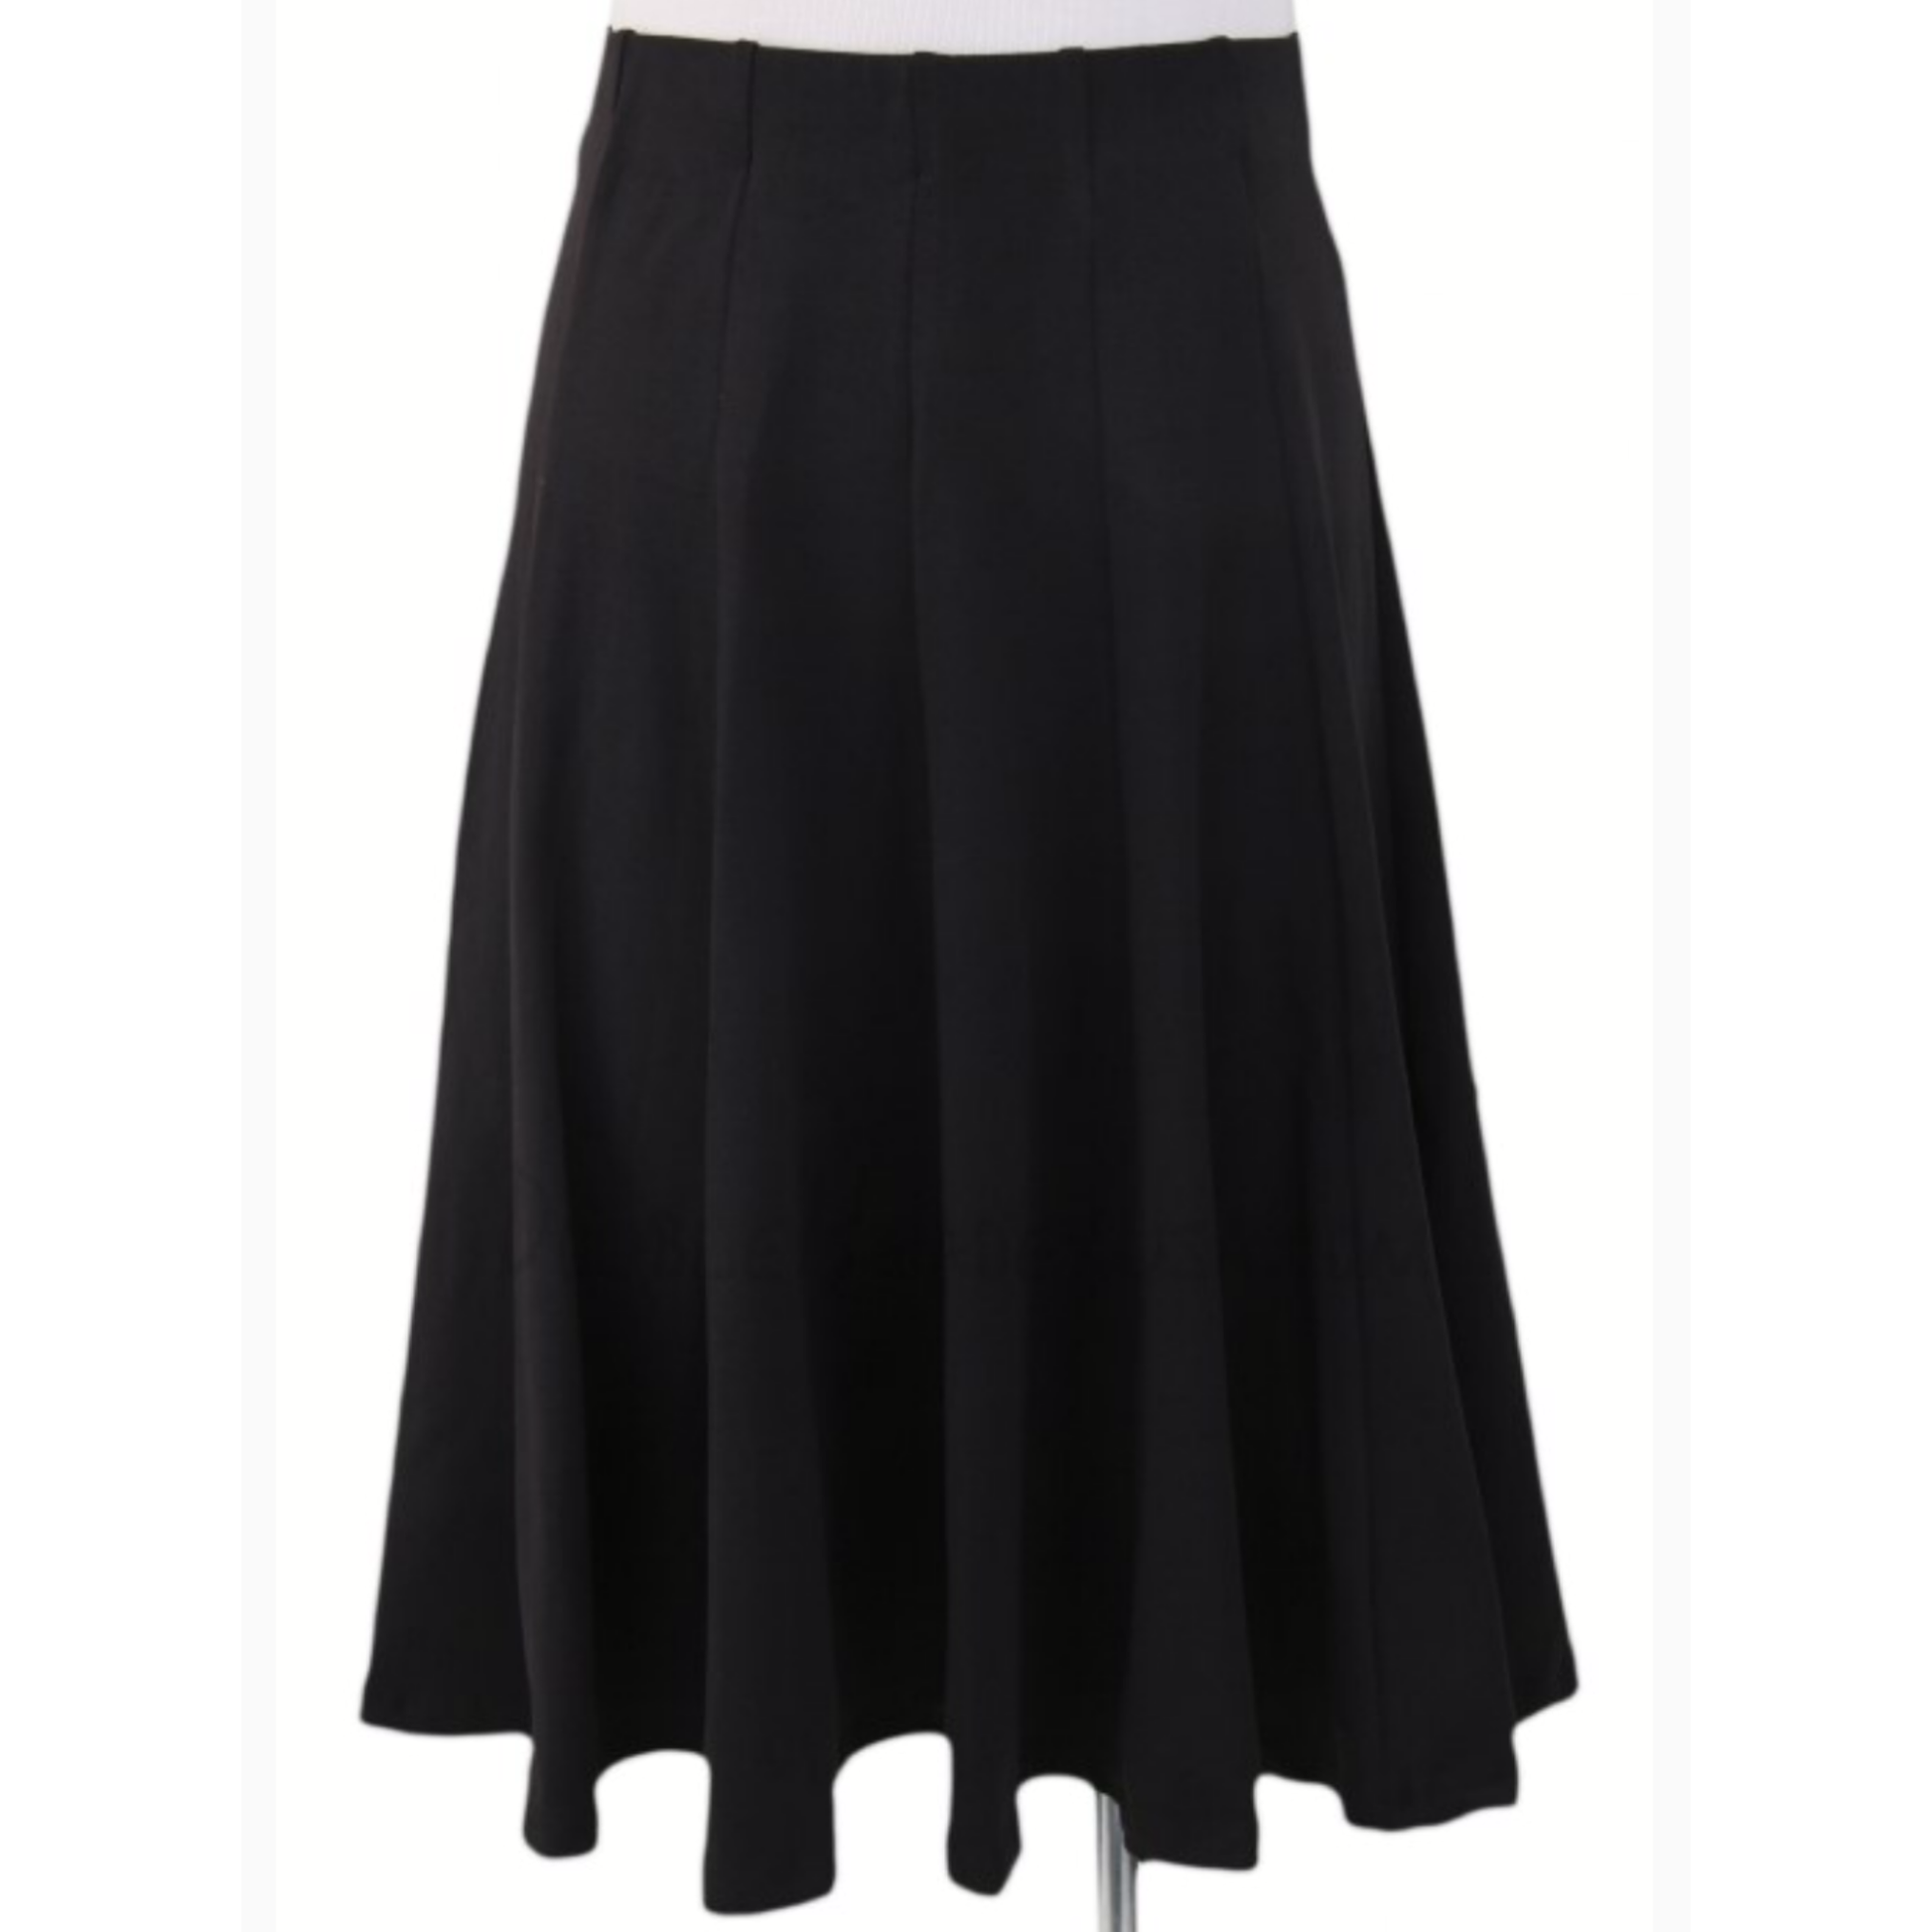 Kiki Riki Ladies Cotton Stretch Panel Skirt tznius-fashion-tzniut